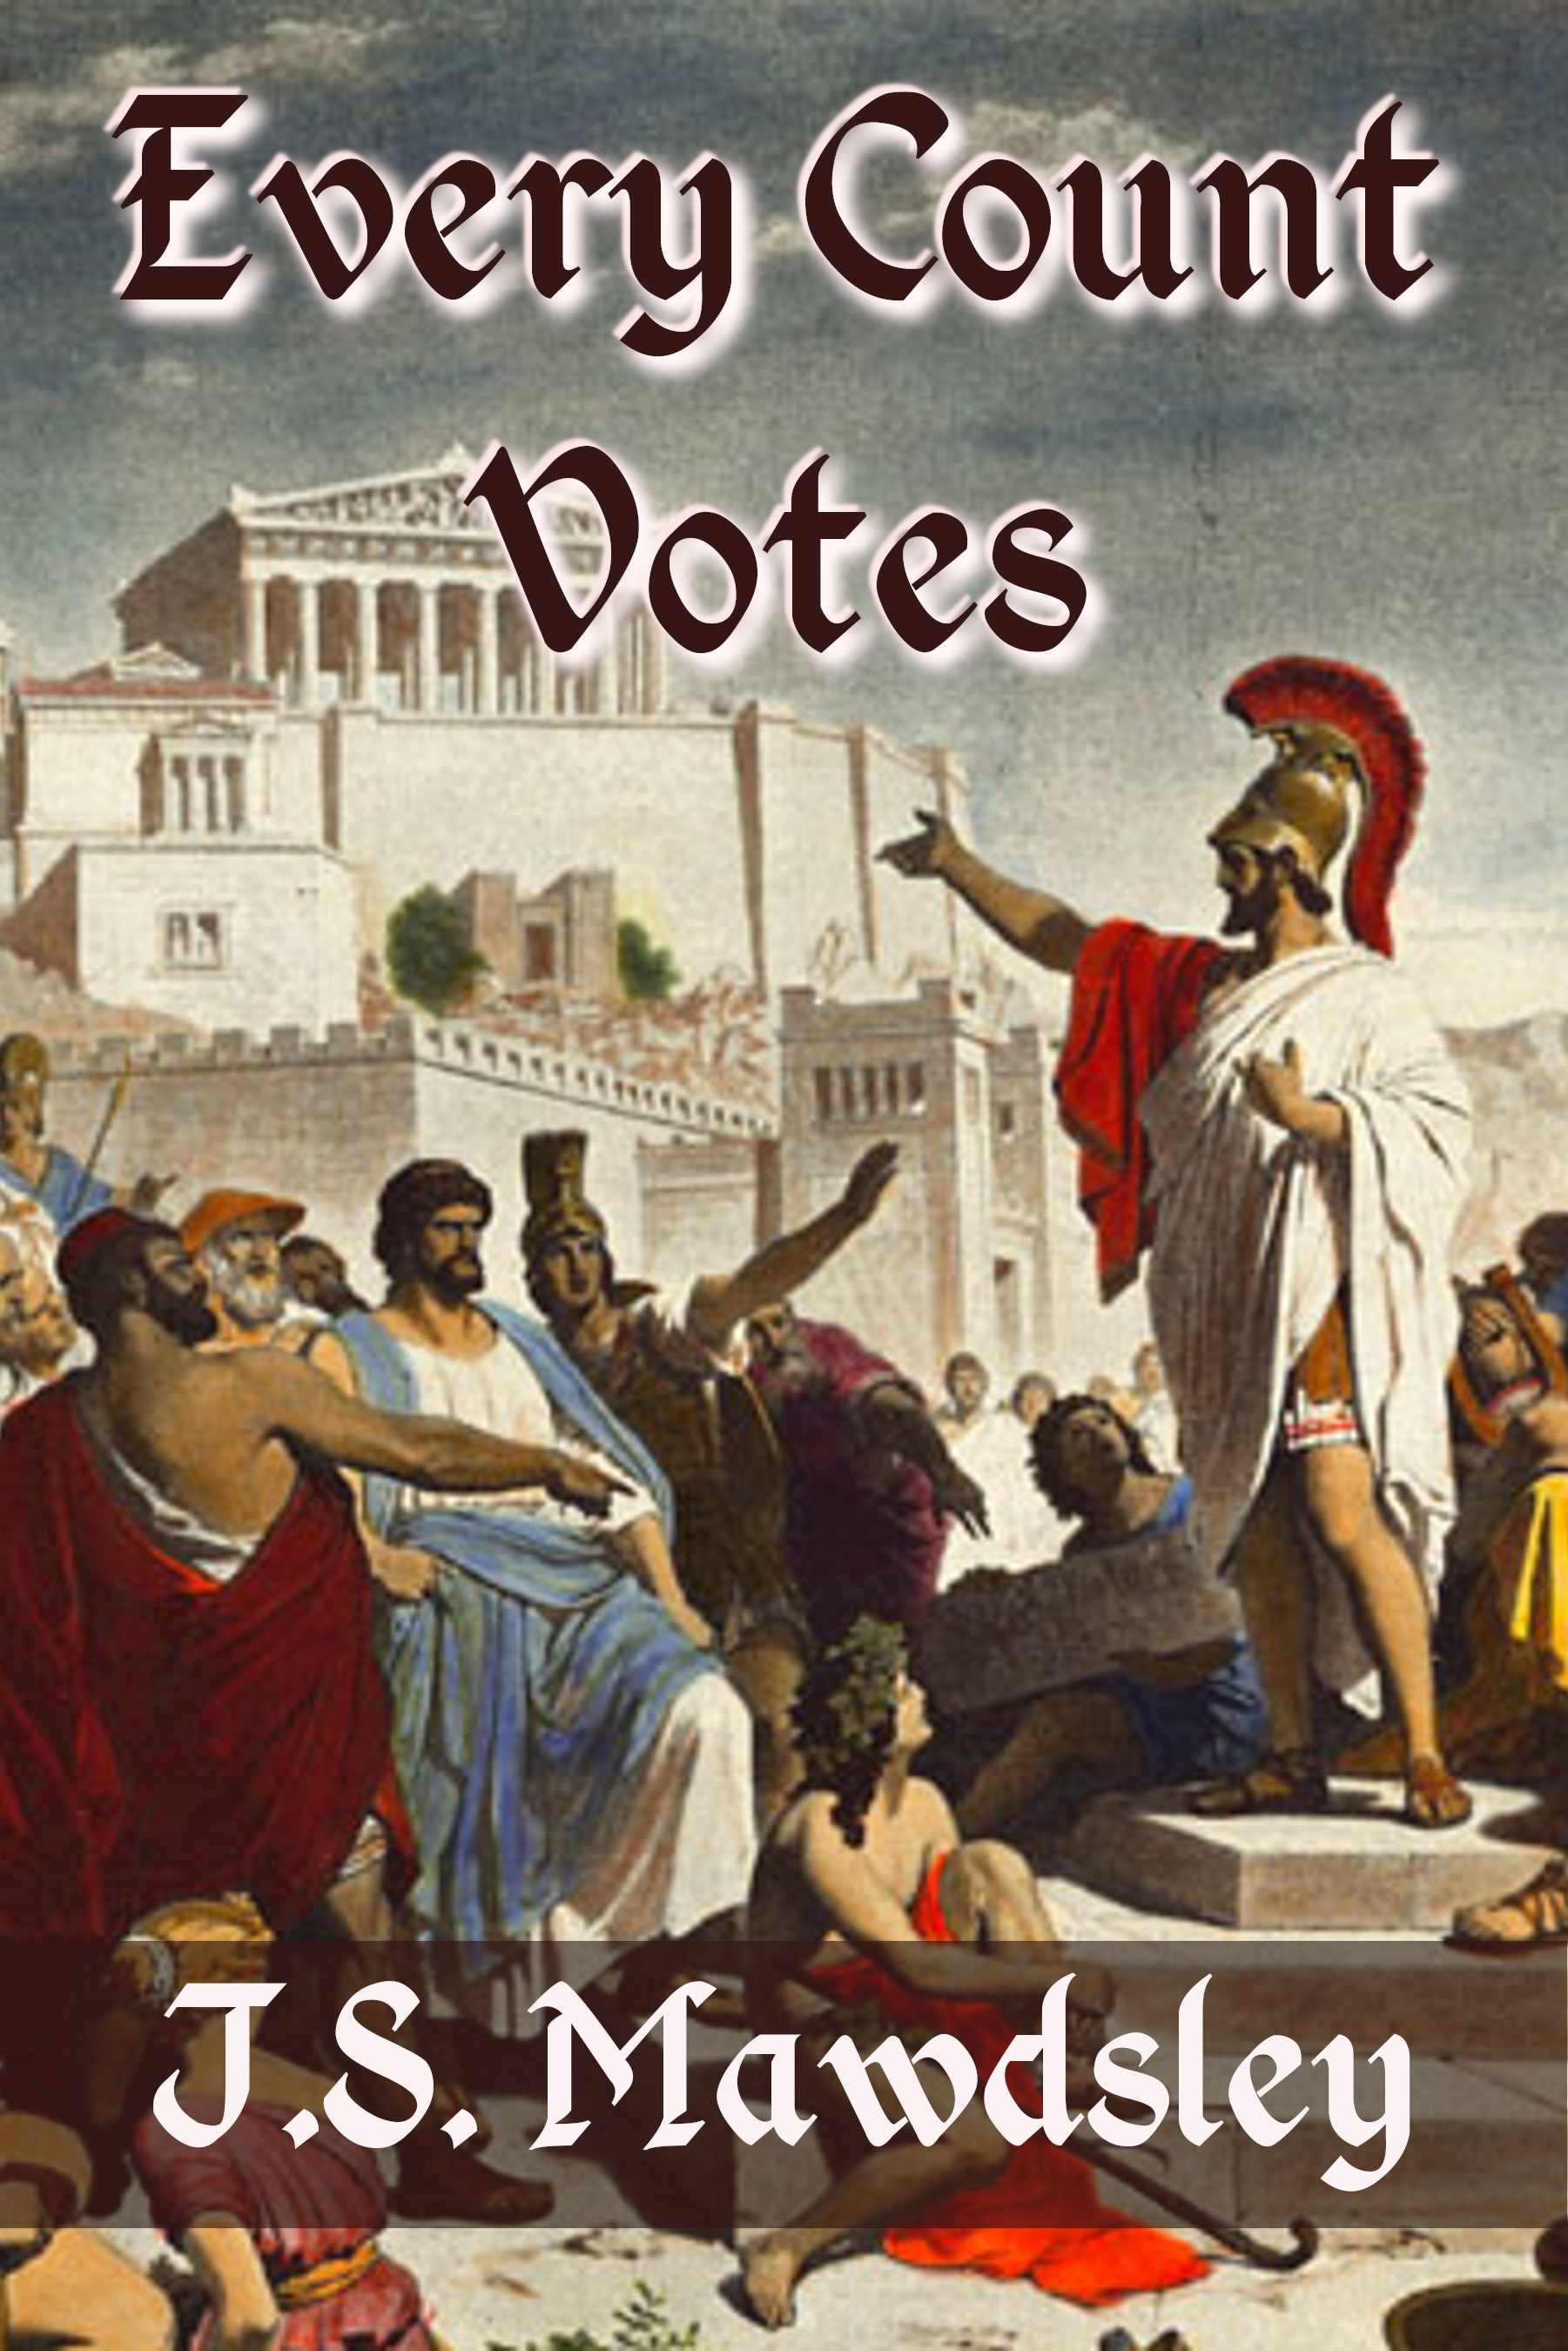 Рассвет демократии в афинах